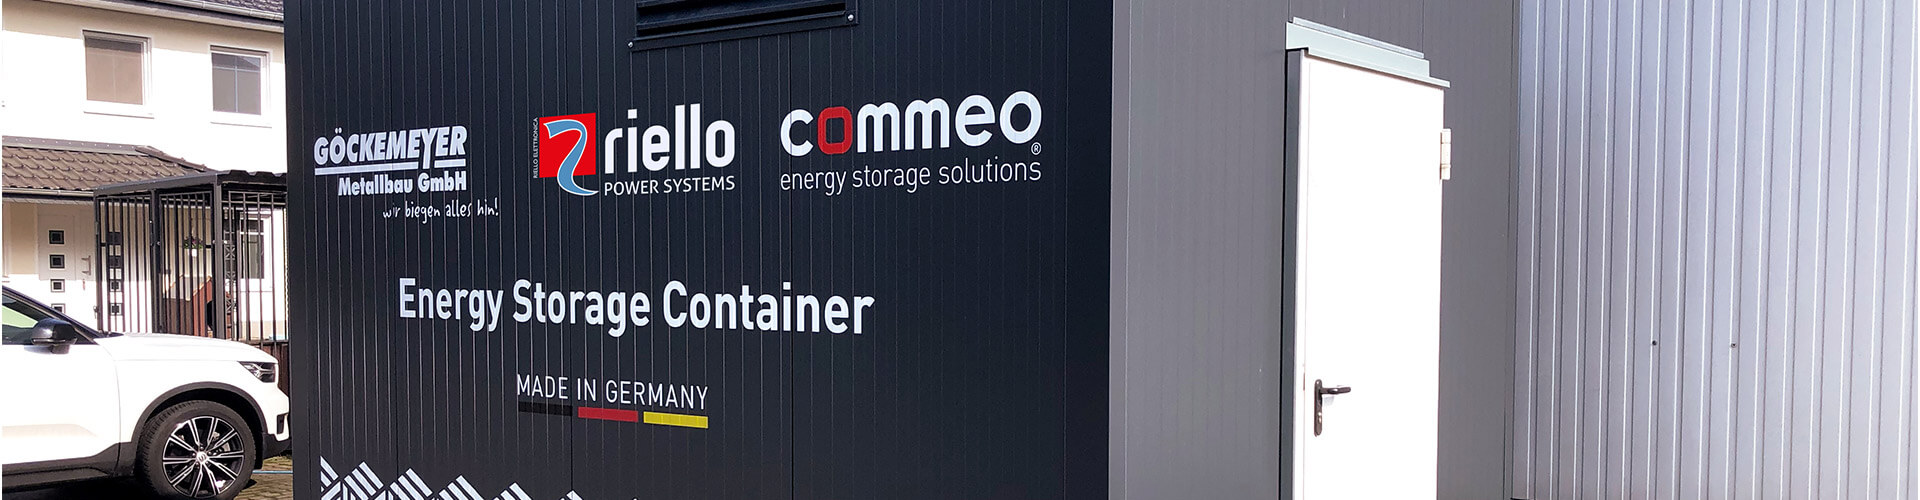 Das Bild veranschaulicht einen robusten Energiespeicher-Container, der sich im Außenbereich der Göckemeyer Metallbau GmbH befindet.